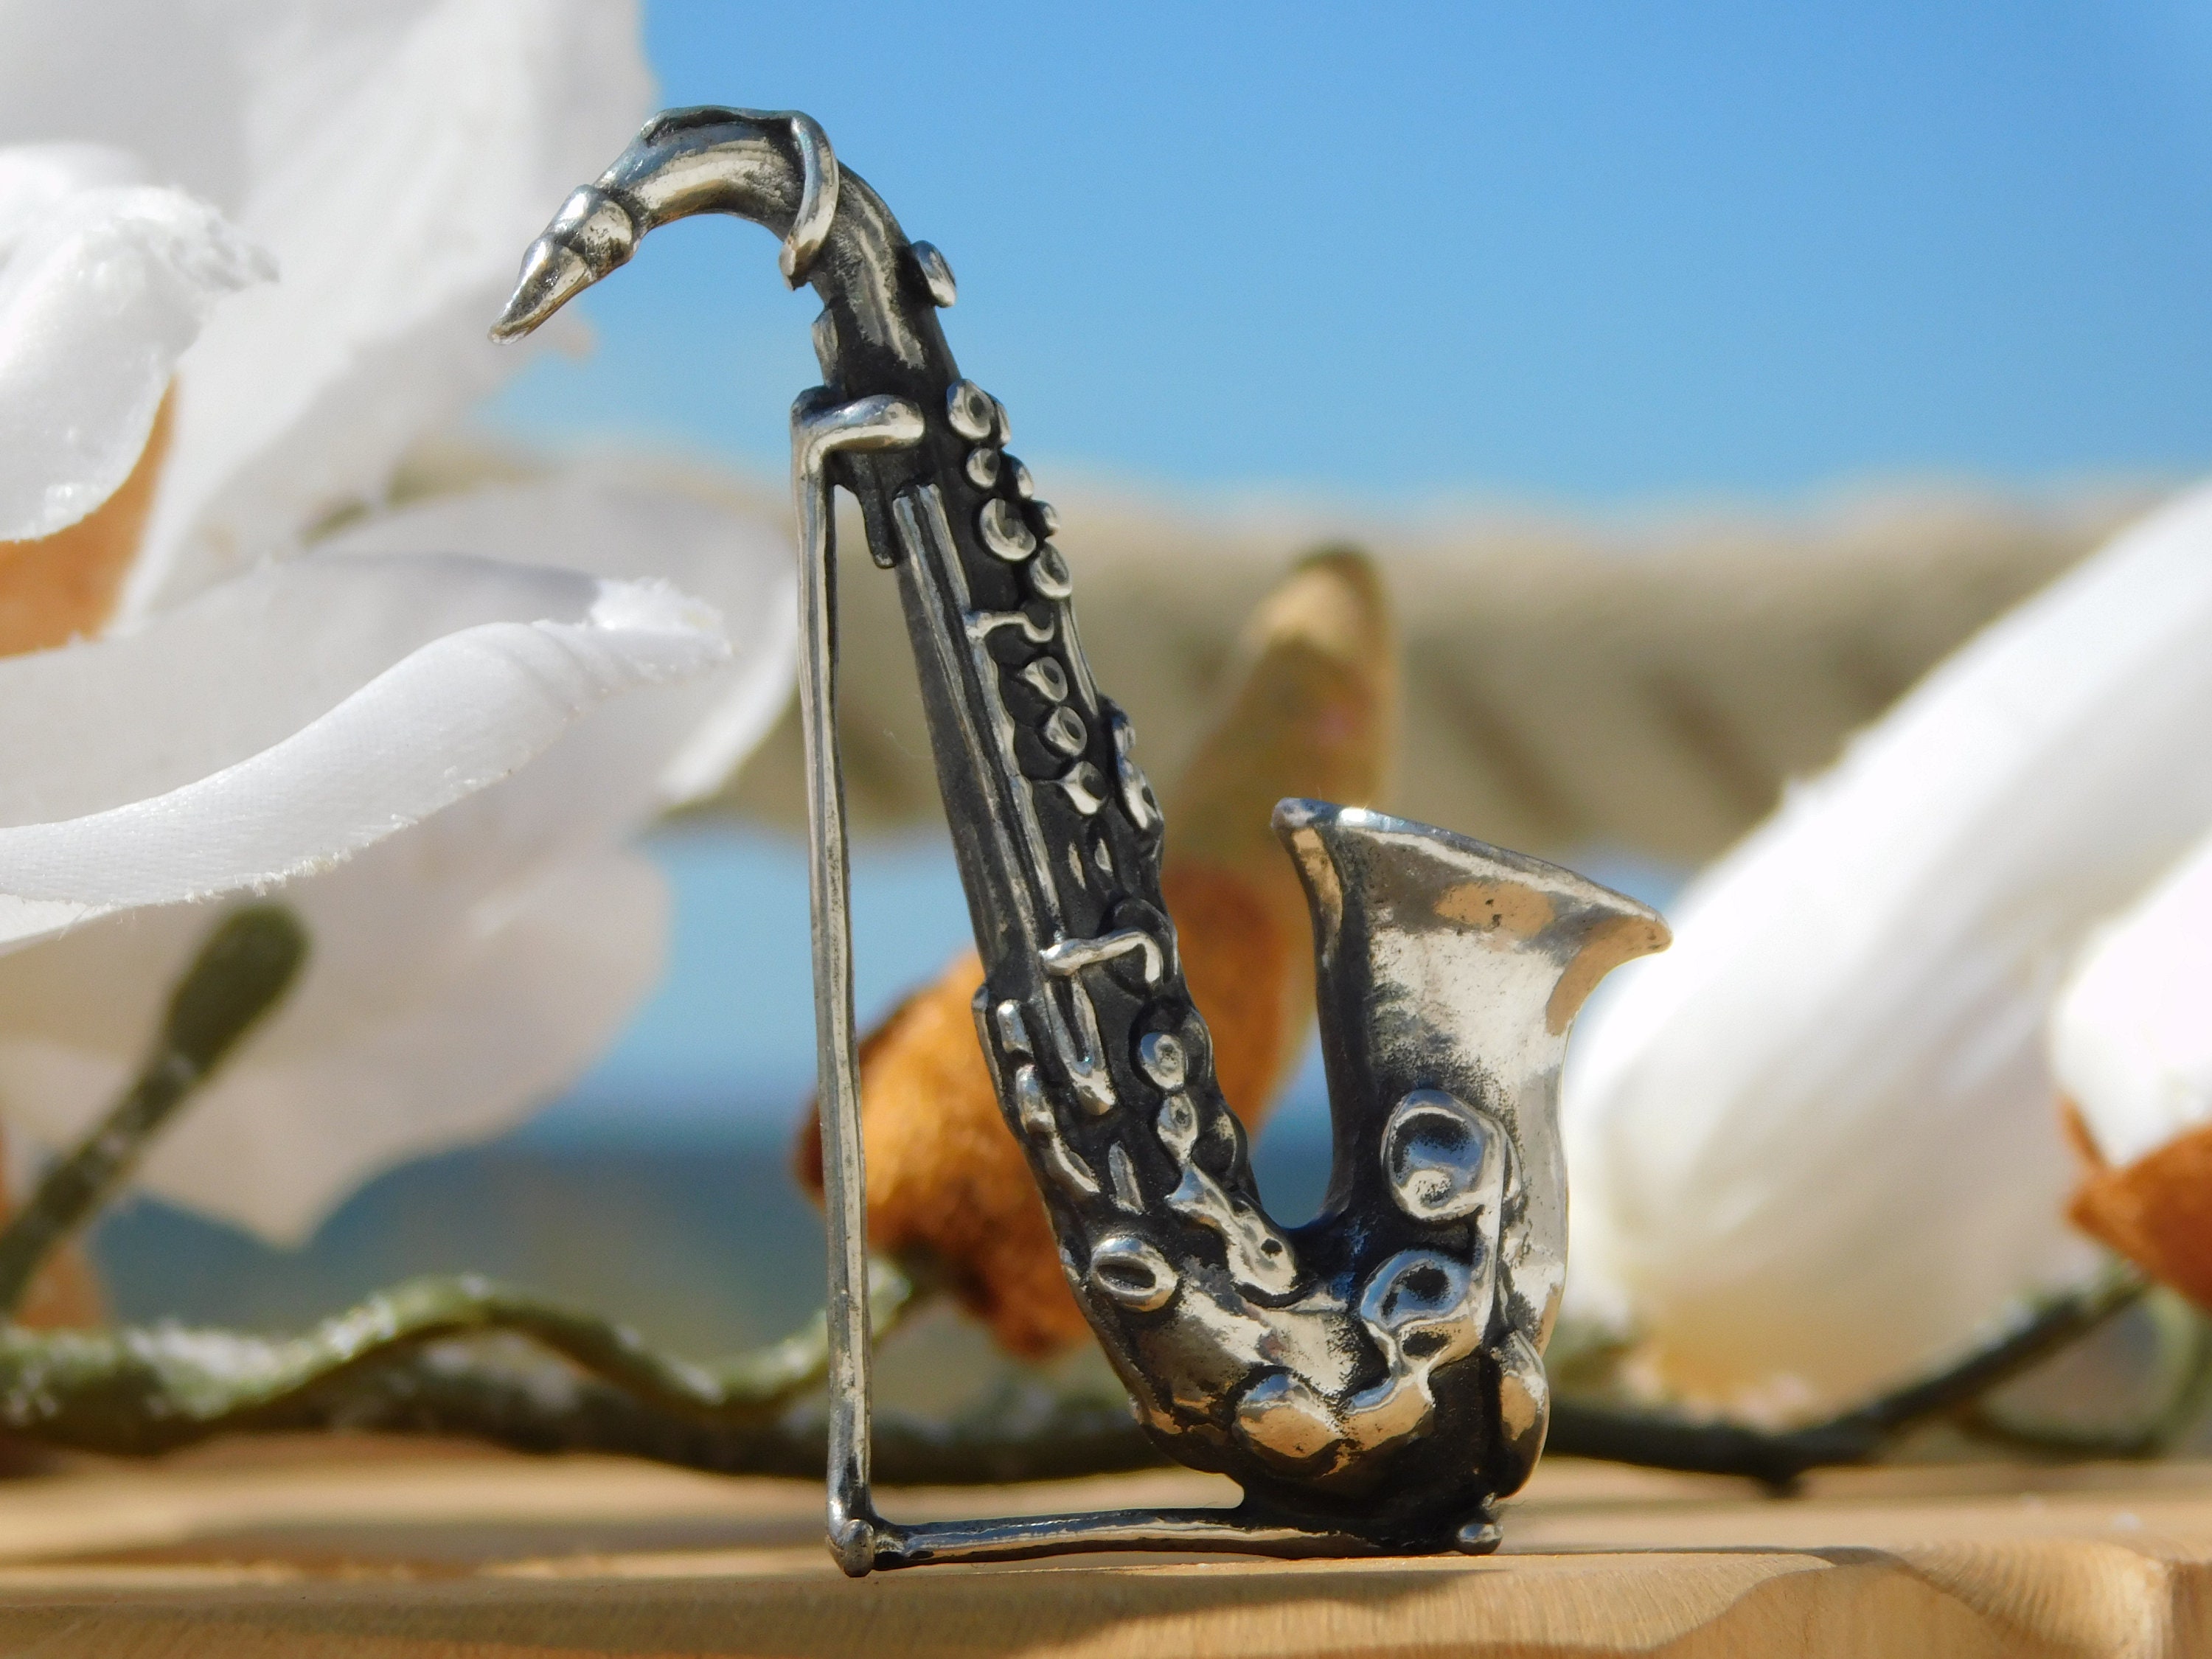 Saxophone miniature Cadeau pour musicien Mélomane, Cadeaux pour elle,  Cadeaux pour lui, Remise de diplôme, Décoration intérieure, Concert,  Anniversaire CGSA -  France